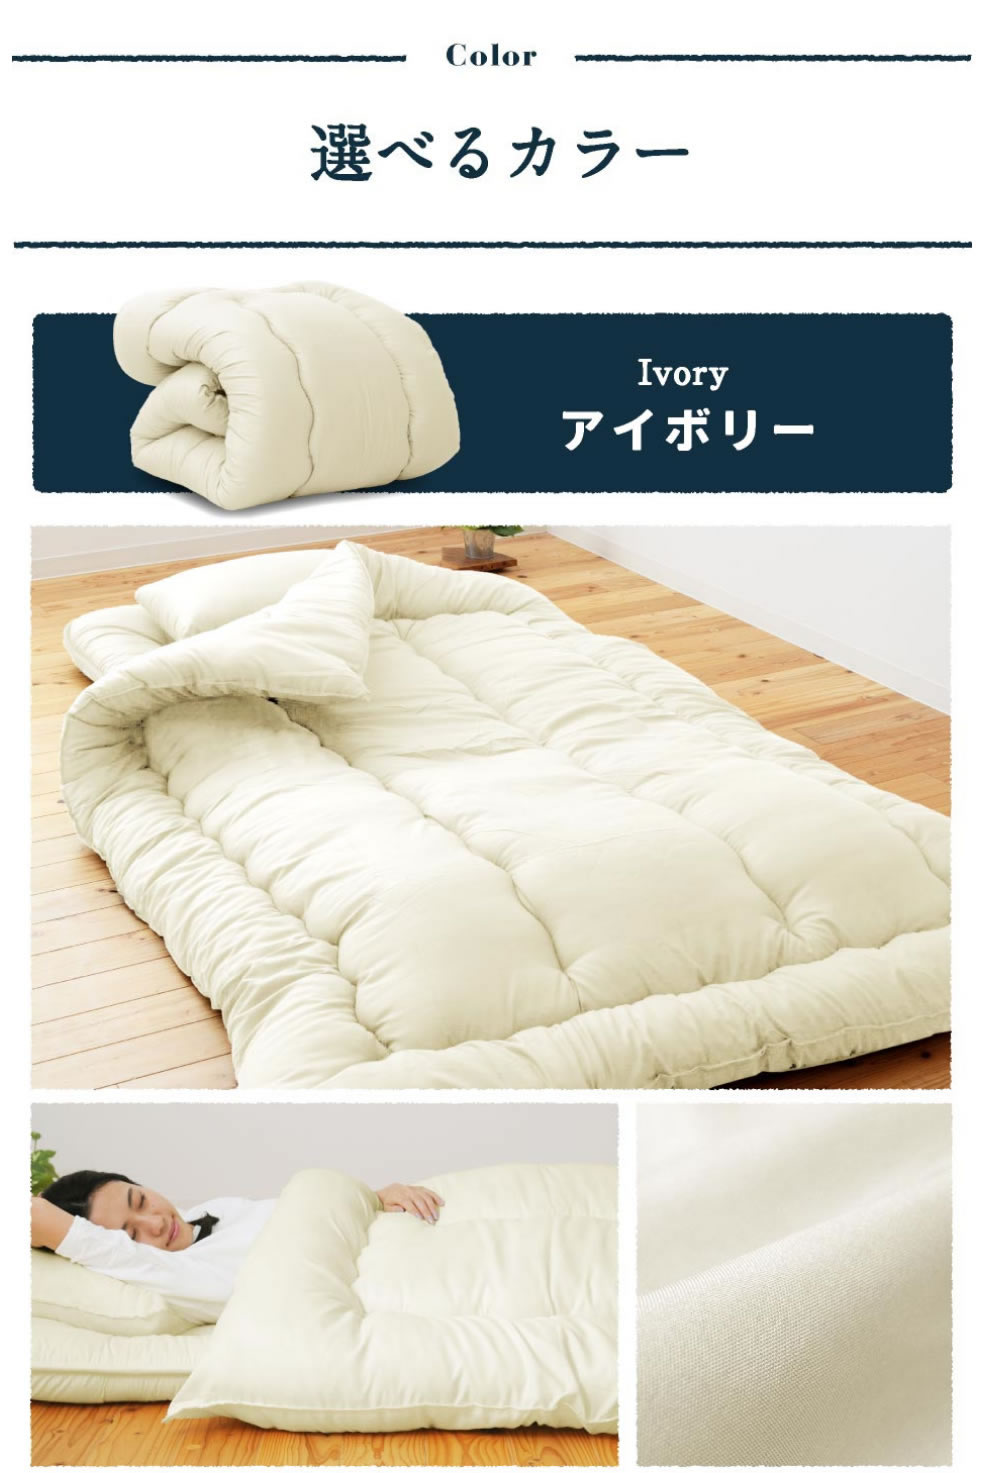 羽毛布団 日本製 ダブルサイズ エクセルゴールド 綿100%生地 増量タイプ